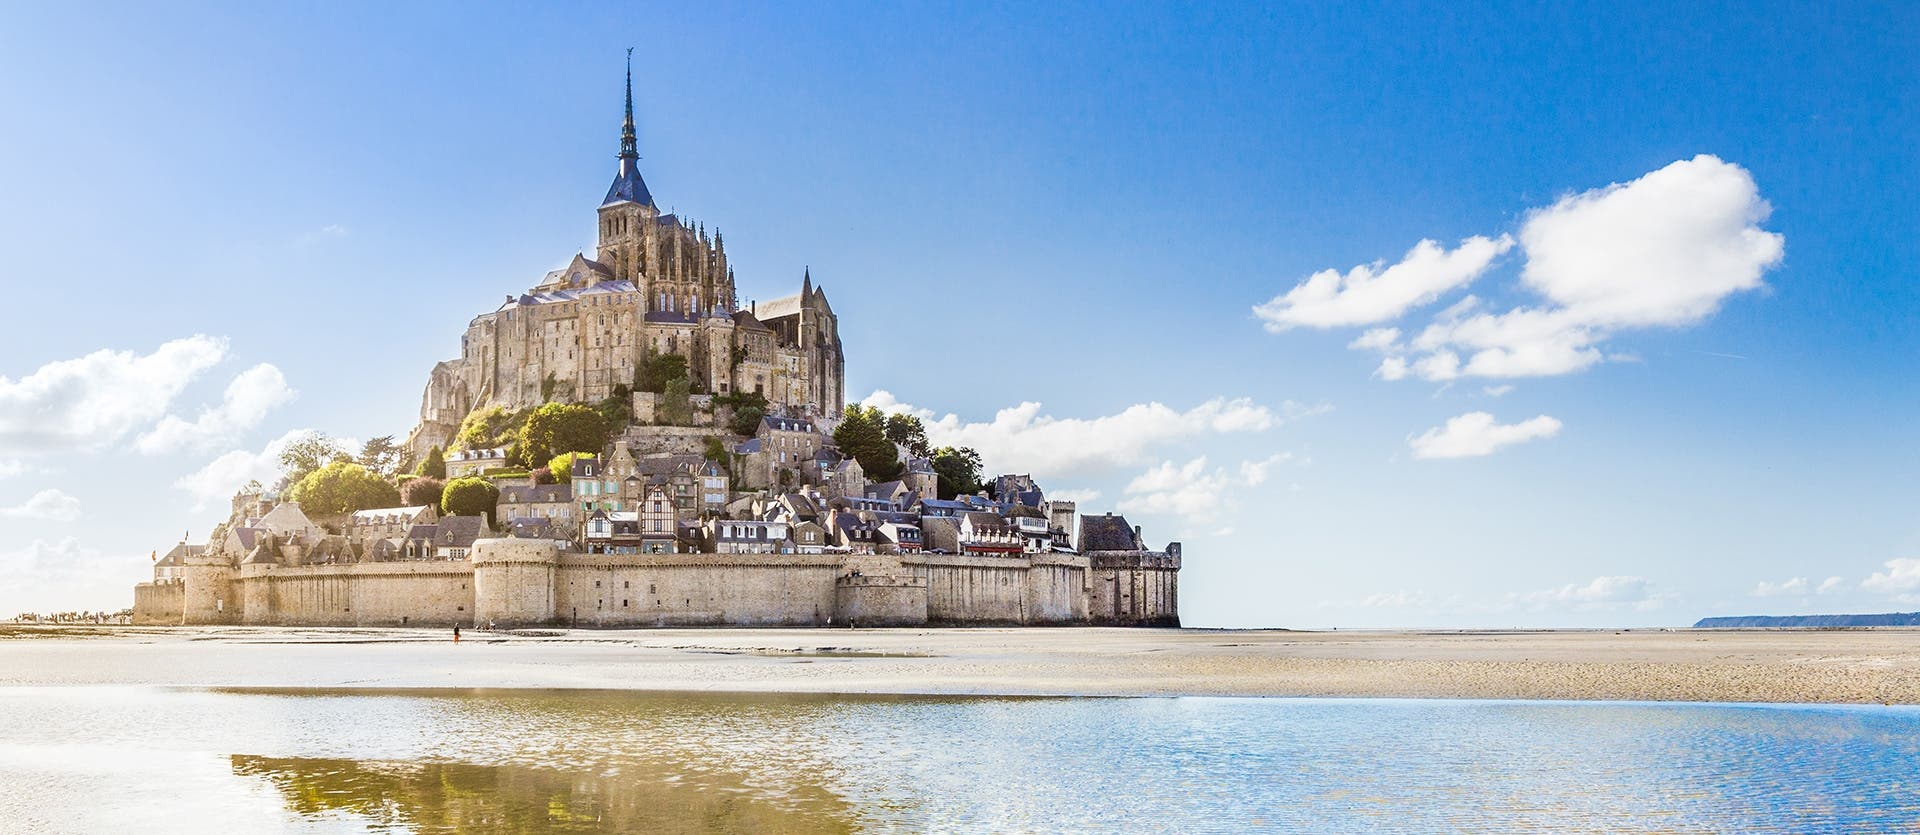 Paris, Loire Castles & Normandy